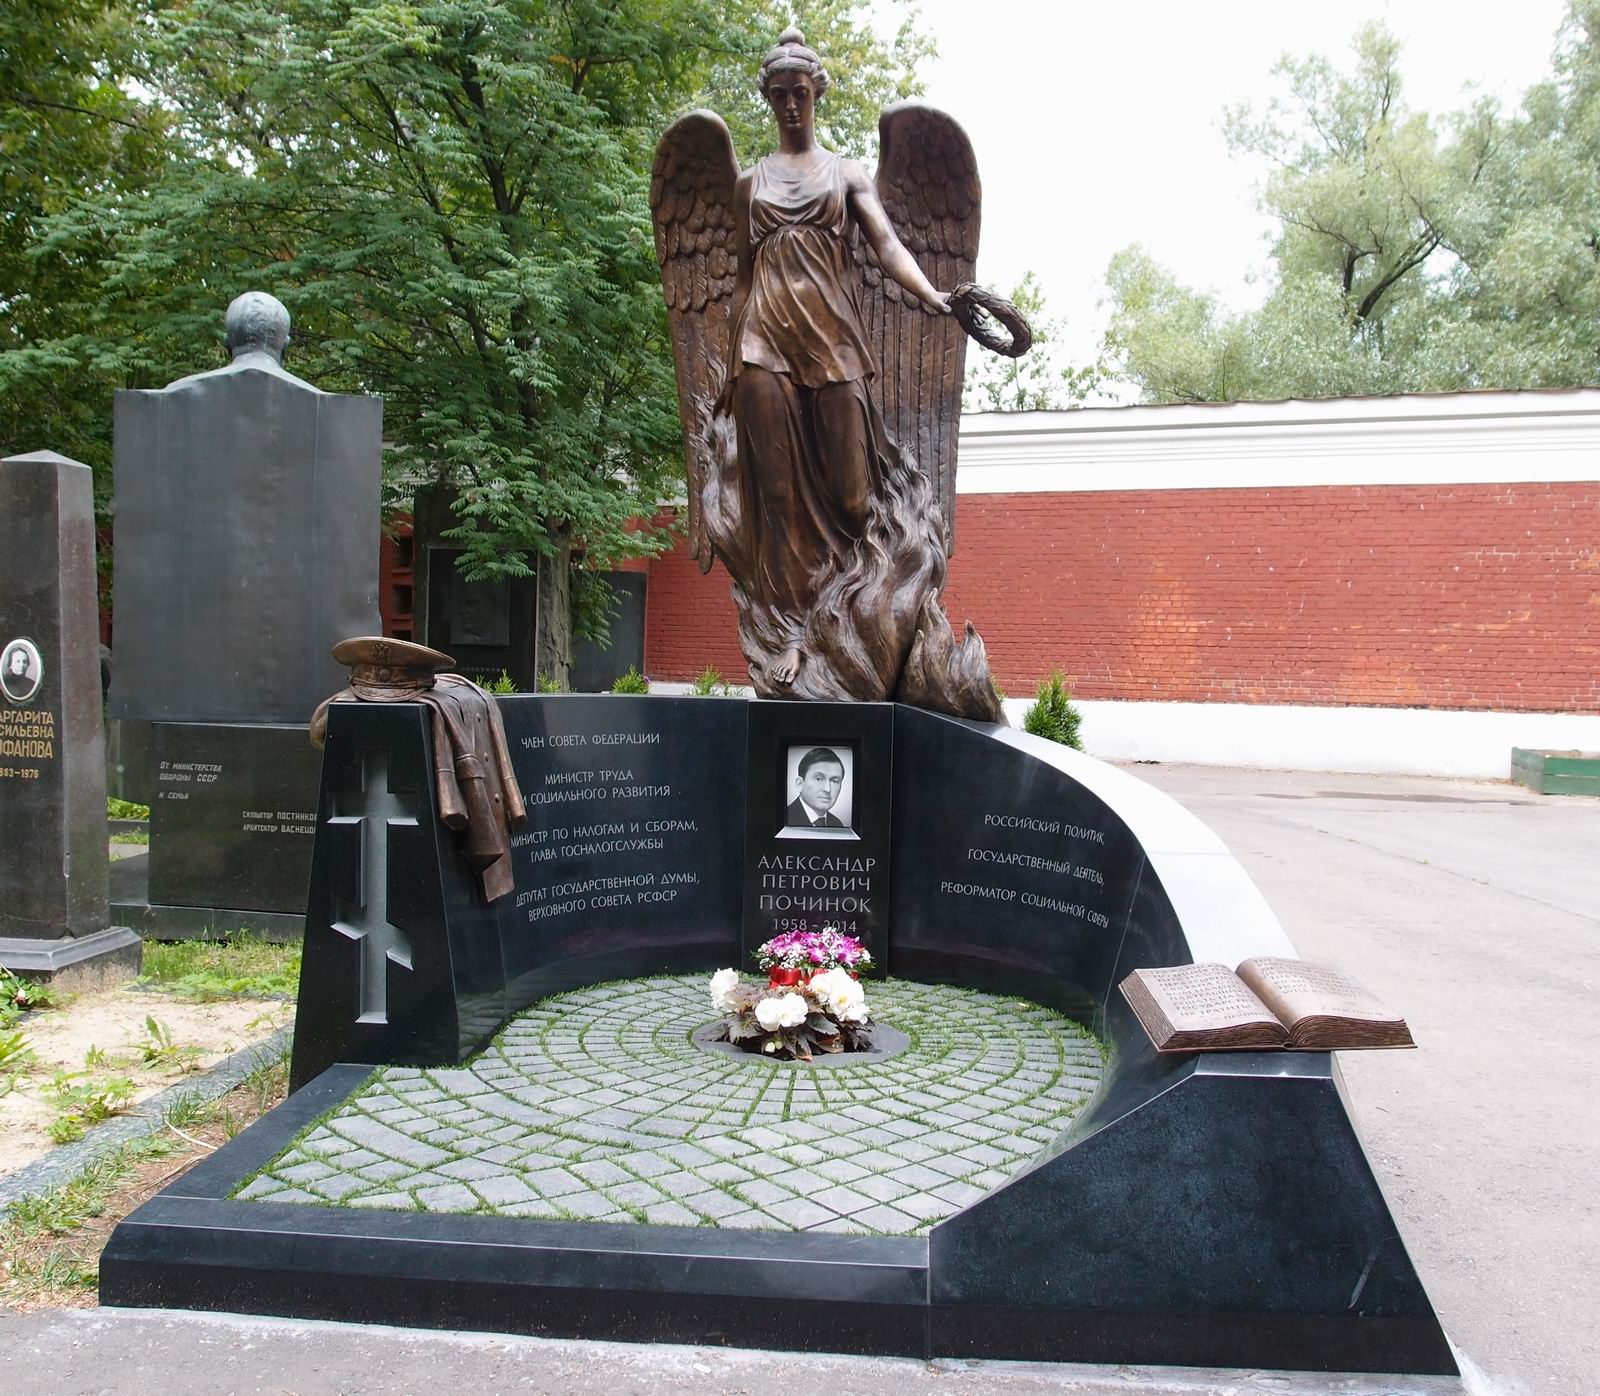 Памятник на могиле Починка А.П. (1958-2014), ск. В.Белых, на Новодевичьем кладбище (9-1-17).